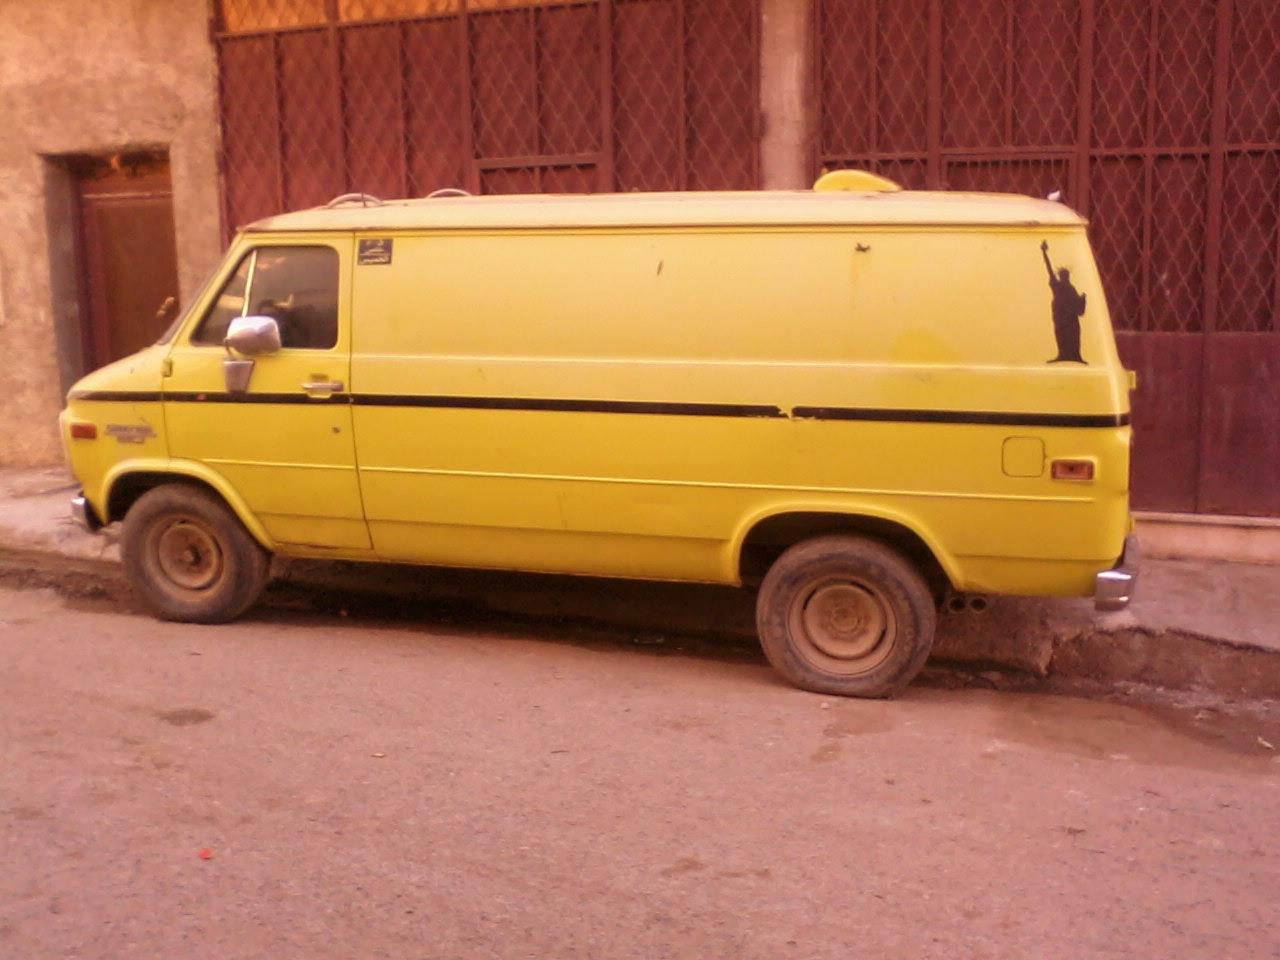 صور المركبات الأمريكية المميزة في الجزائر - صفحة 9 Chevy+van+hmadna+relizane